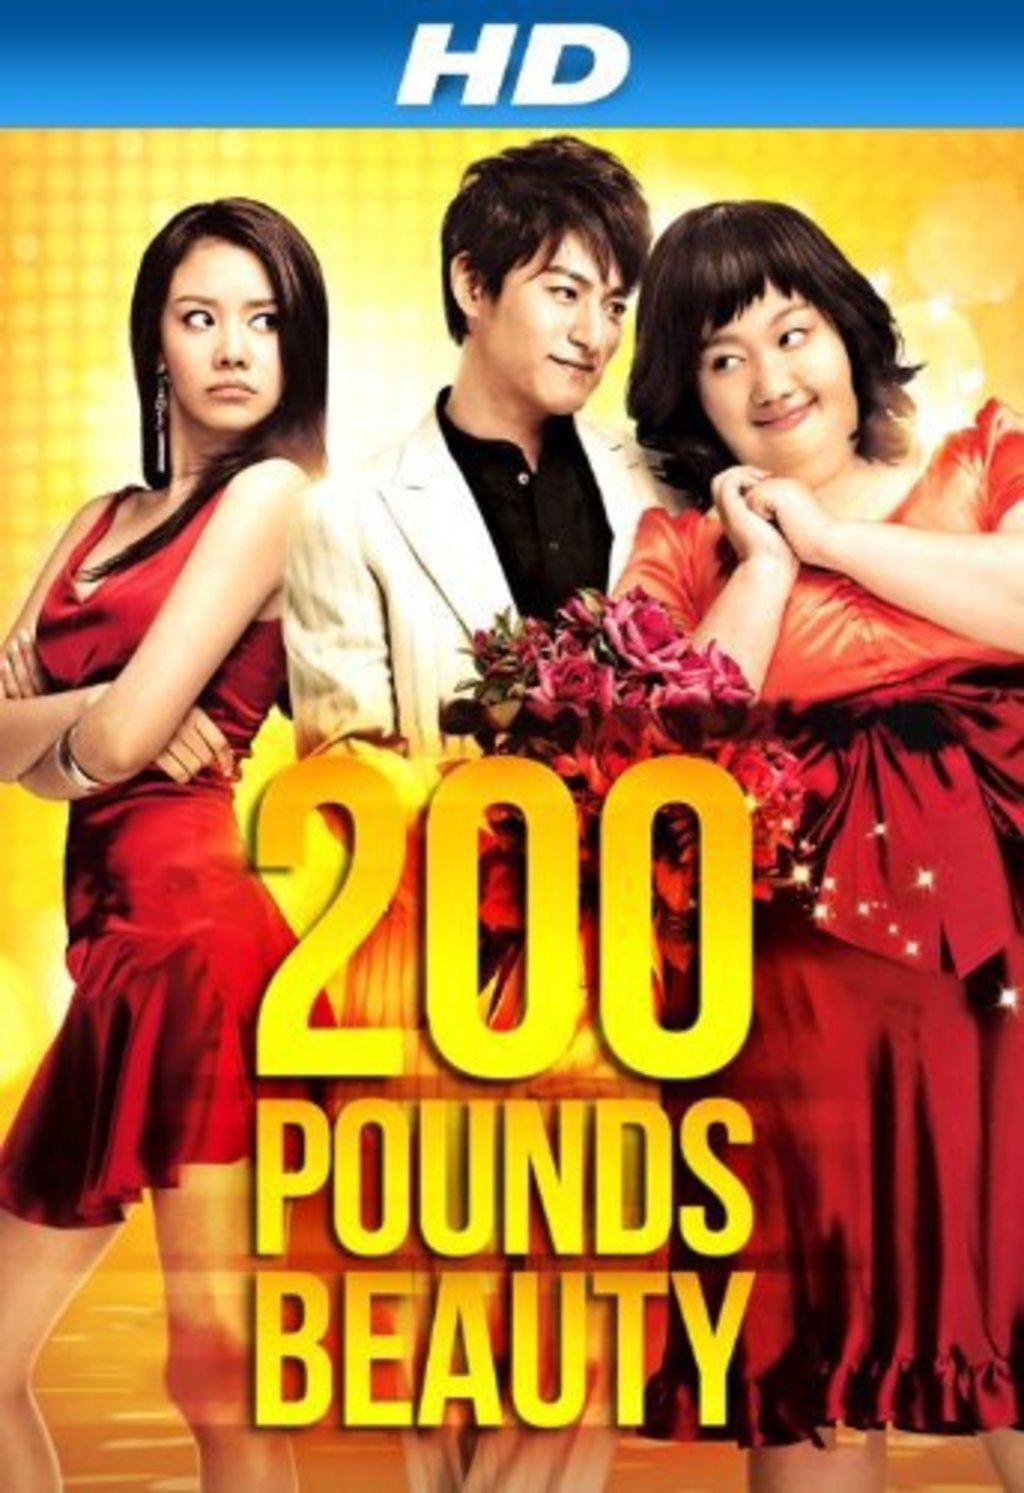 Watch 200 Pounds Beauty On Netflix Today Netflixmovies Com